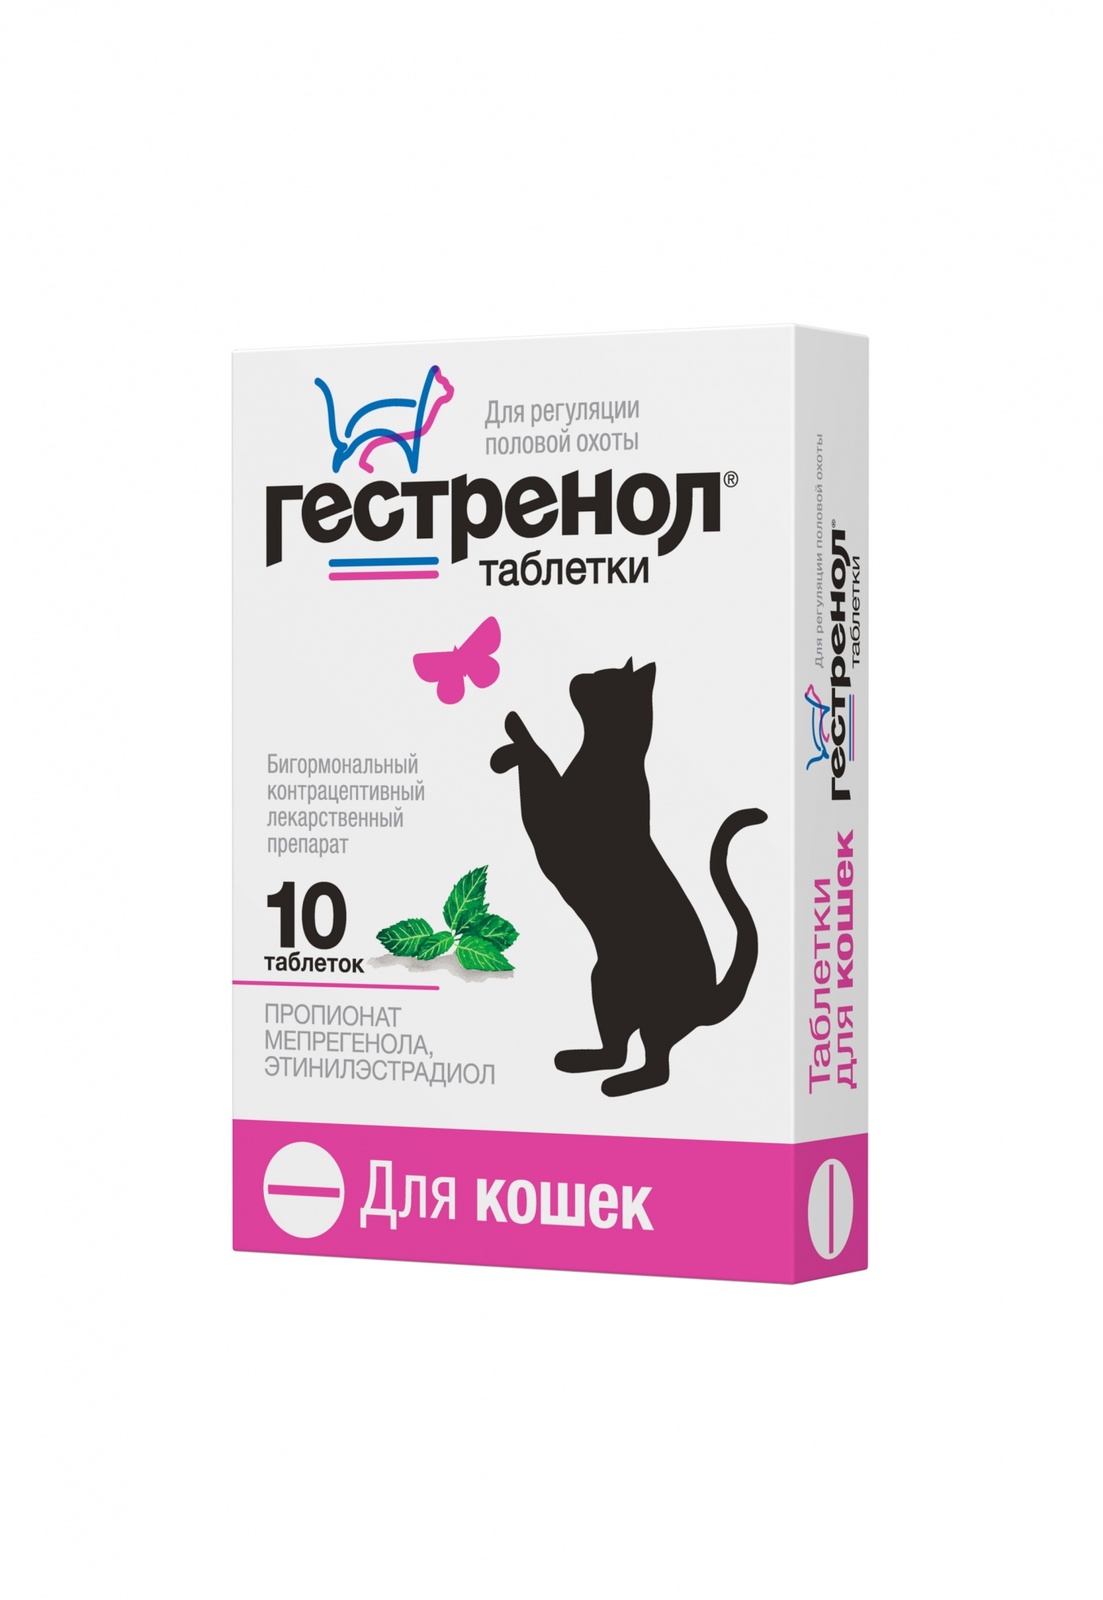 Астрафарм Астрафарм гестренол таблетки для кошек для регуляции половой охоты, 10 таб. (7 г) астрафарм гестренол таблетки для котов 10 таб уп 0 01 кг 5 штук